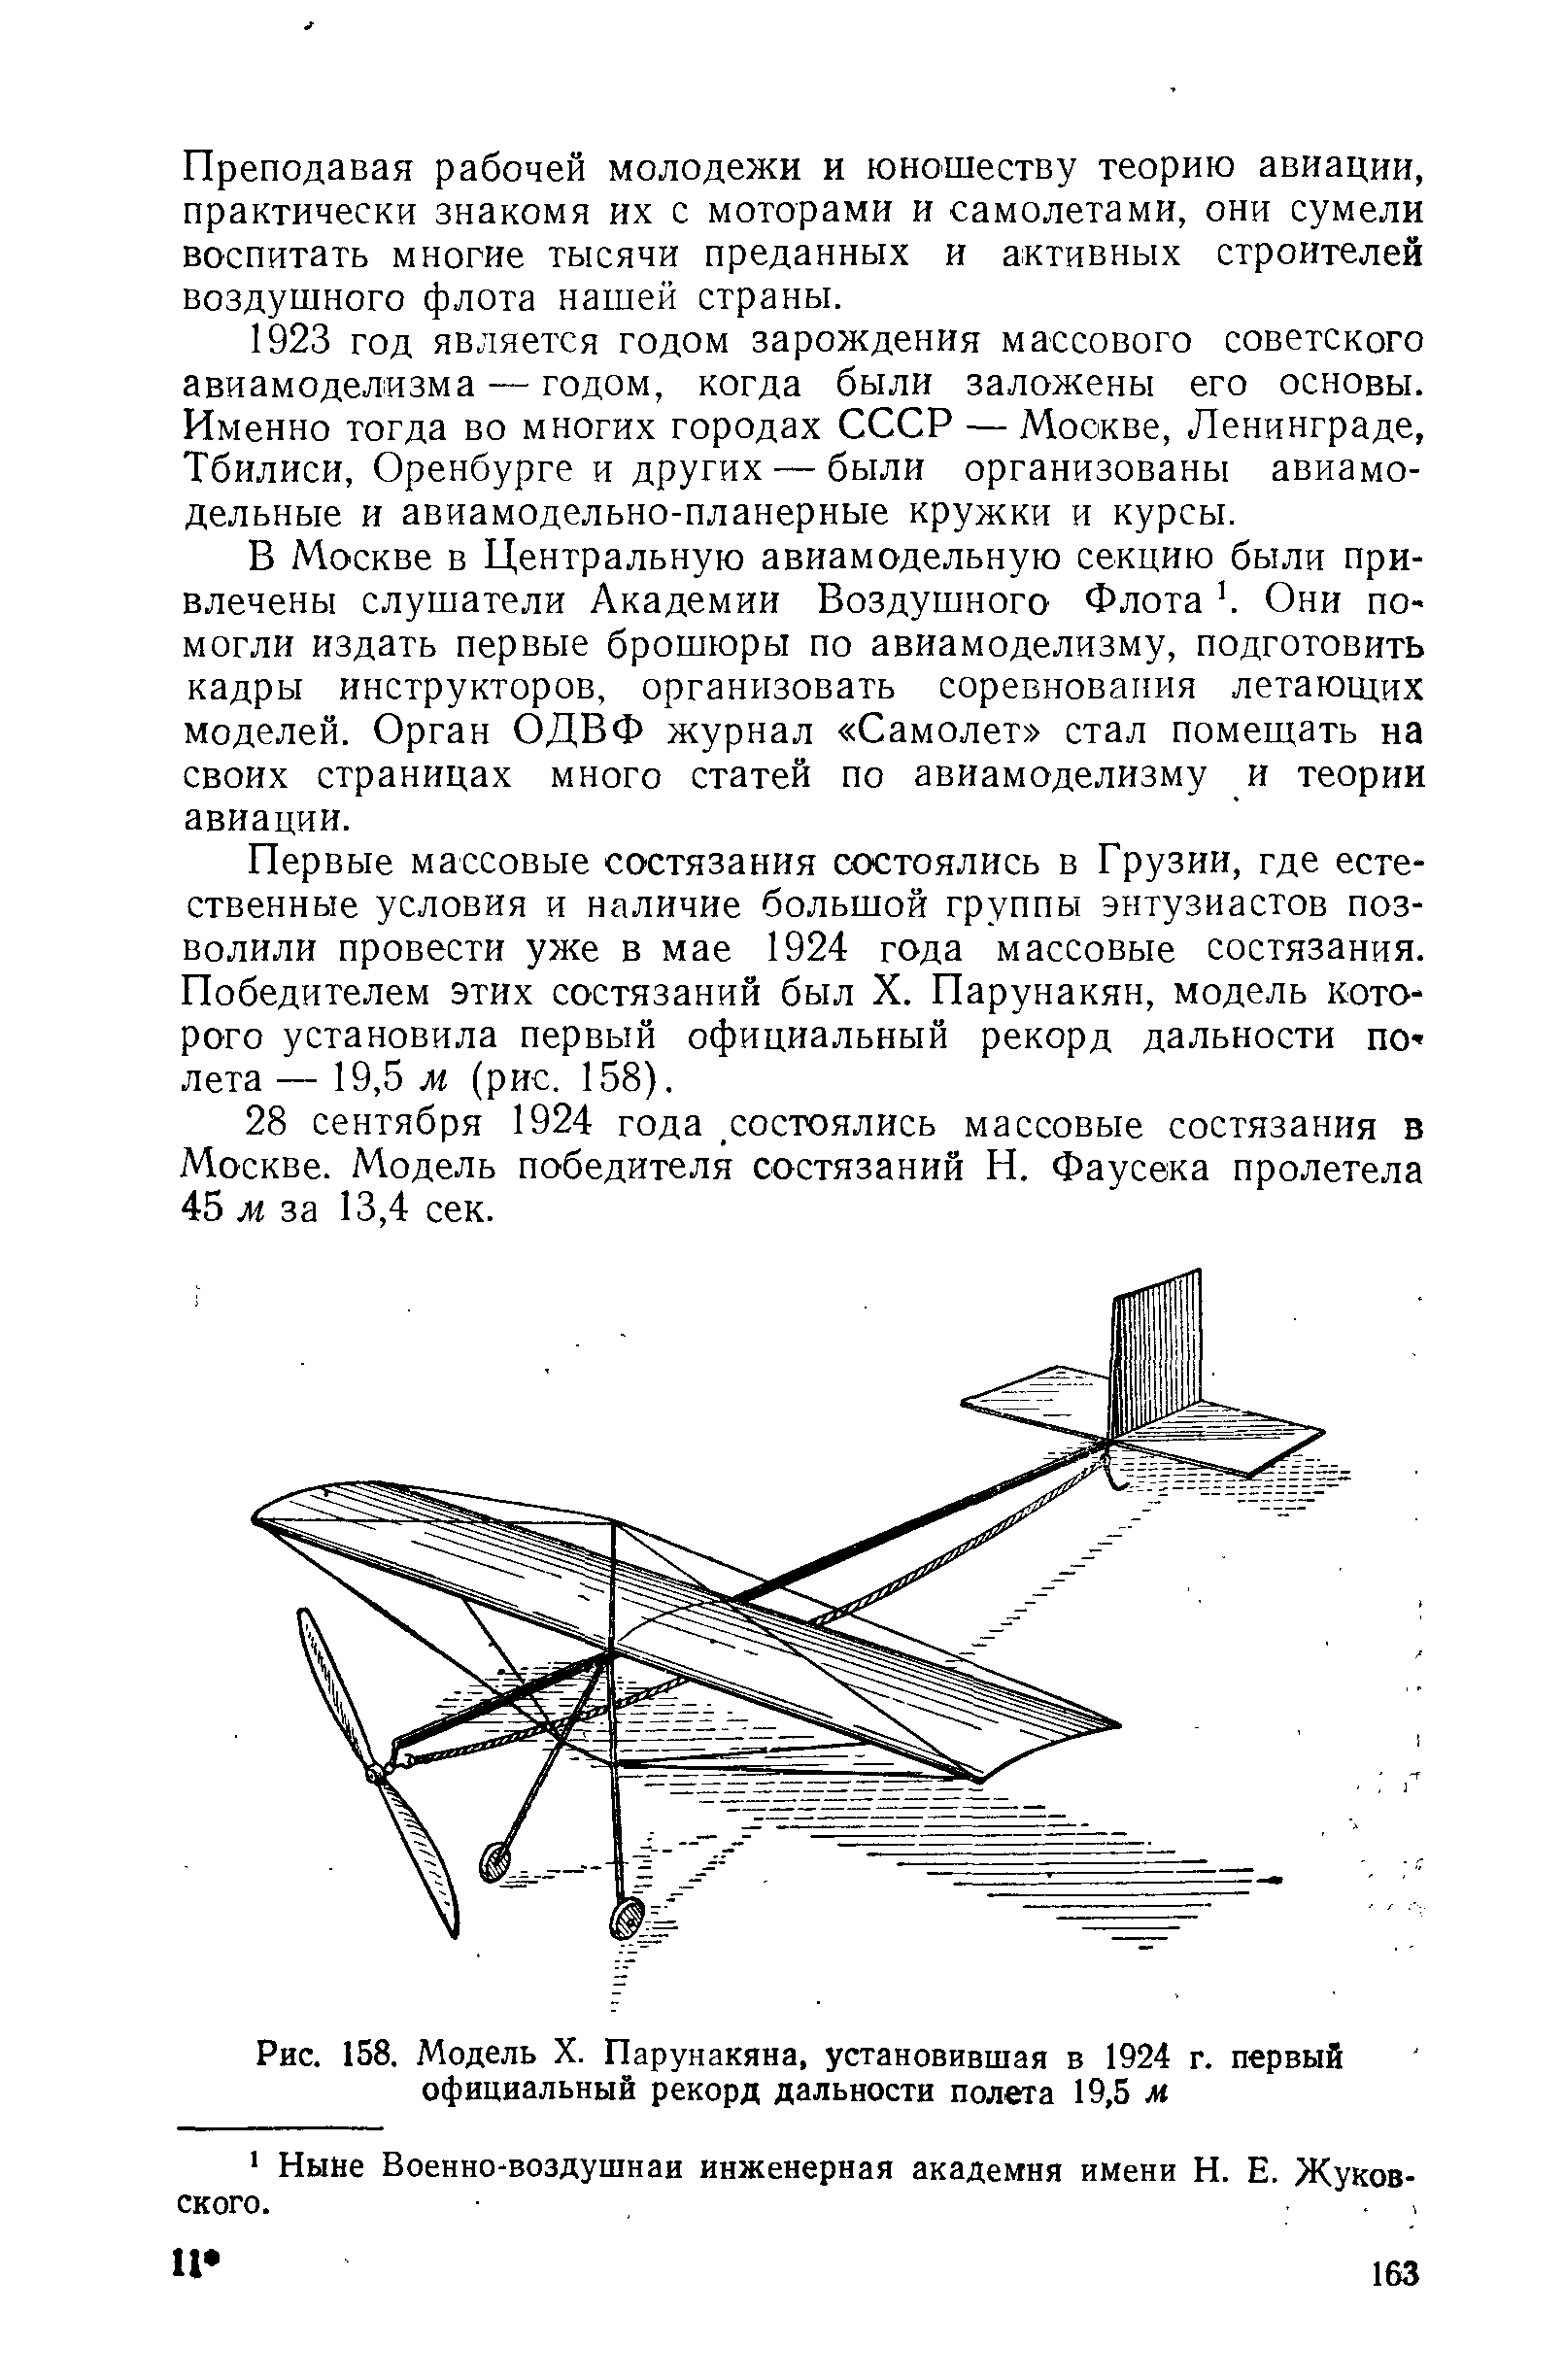 Рис. 158. Модель X. Парунакяна, установившая в 1924 г. первый официальный рекорд дальности полета 19,5 м
